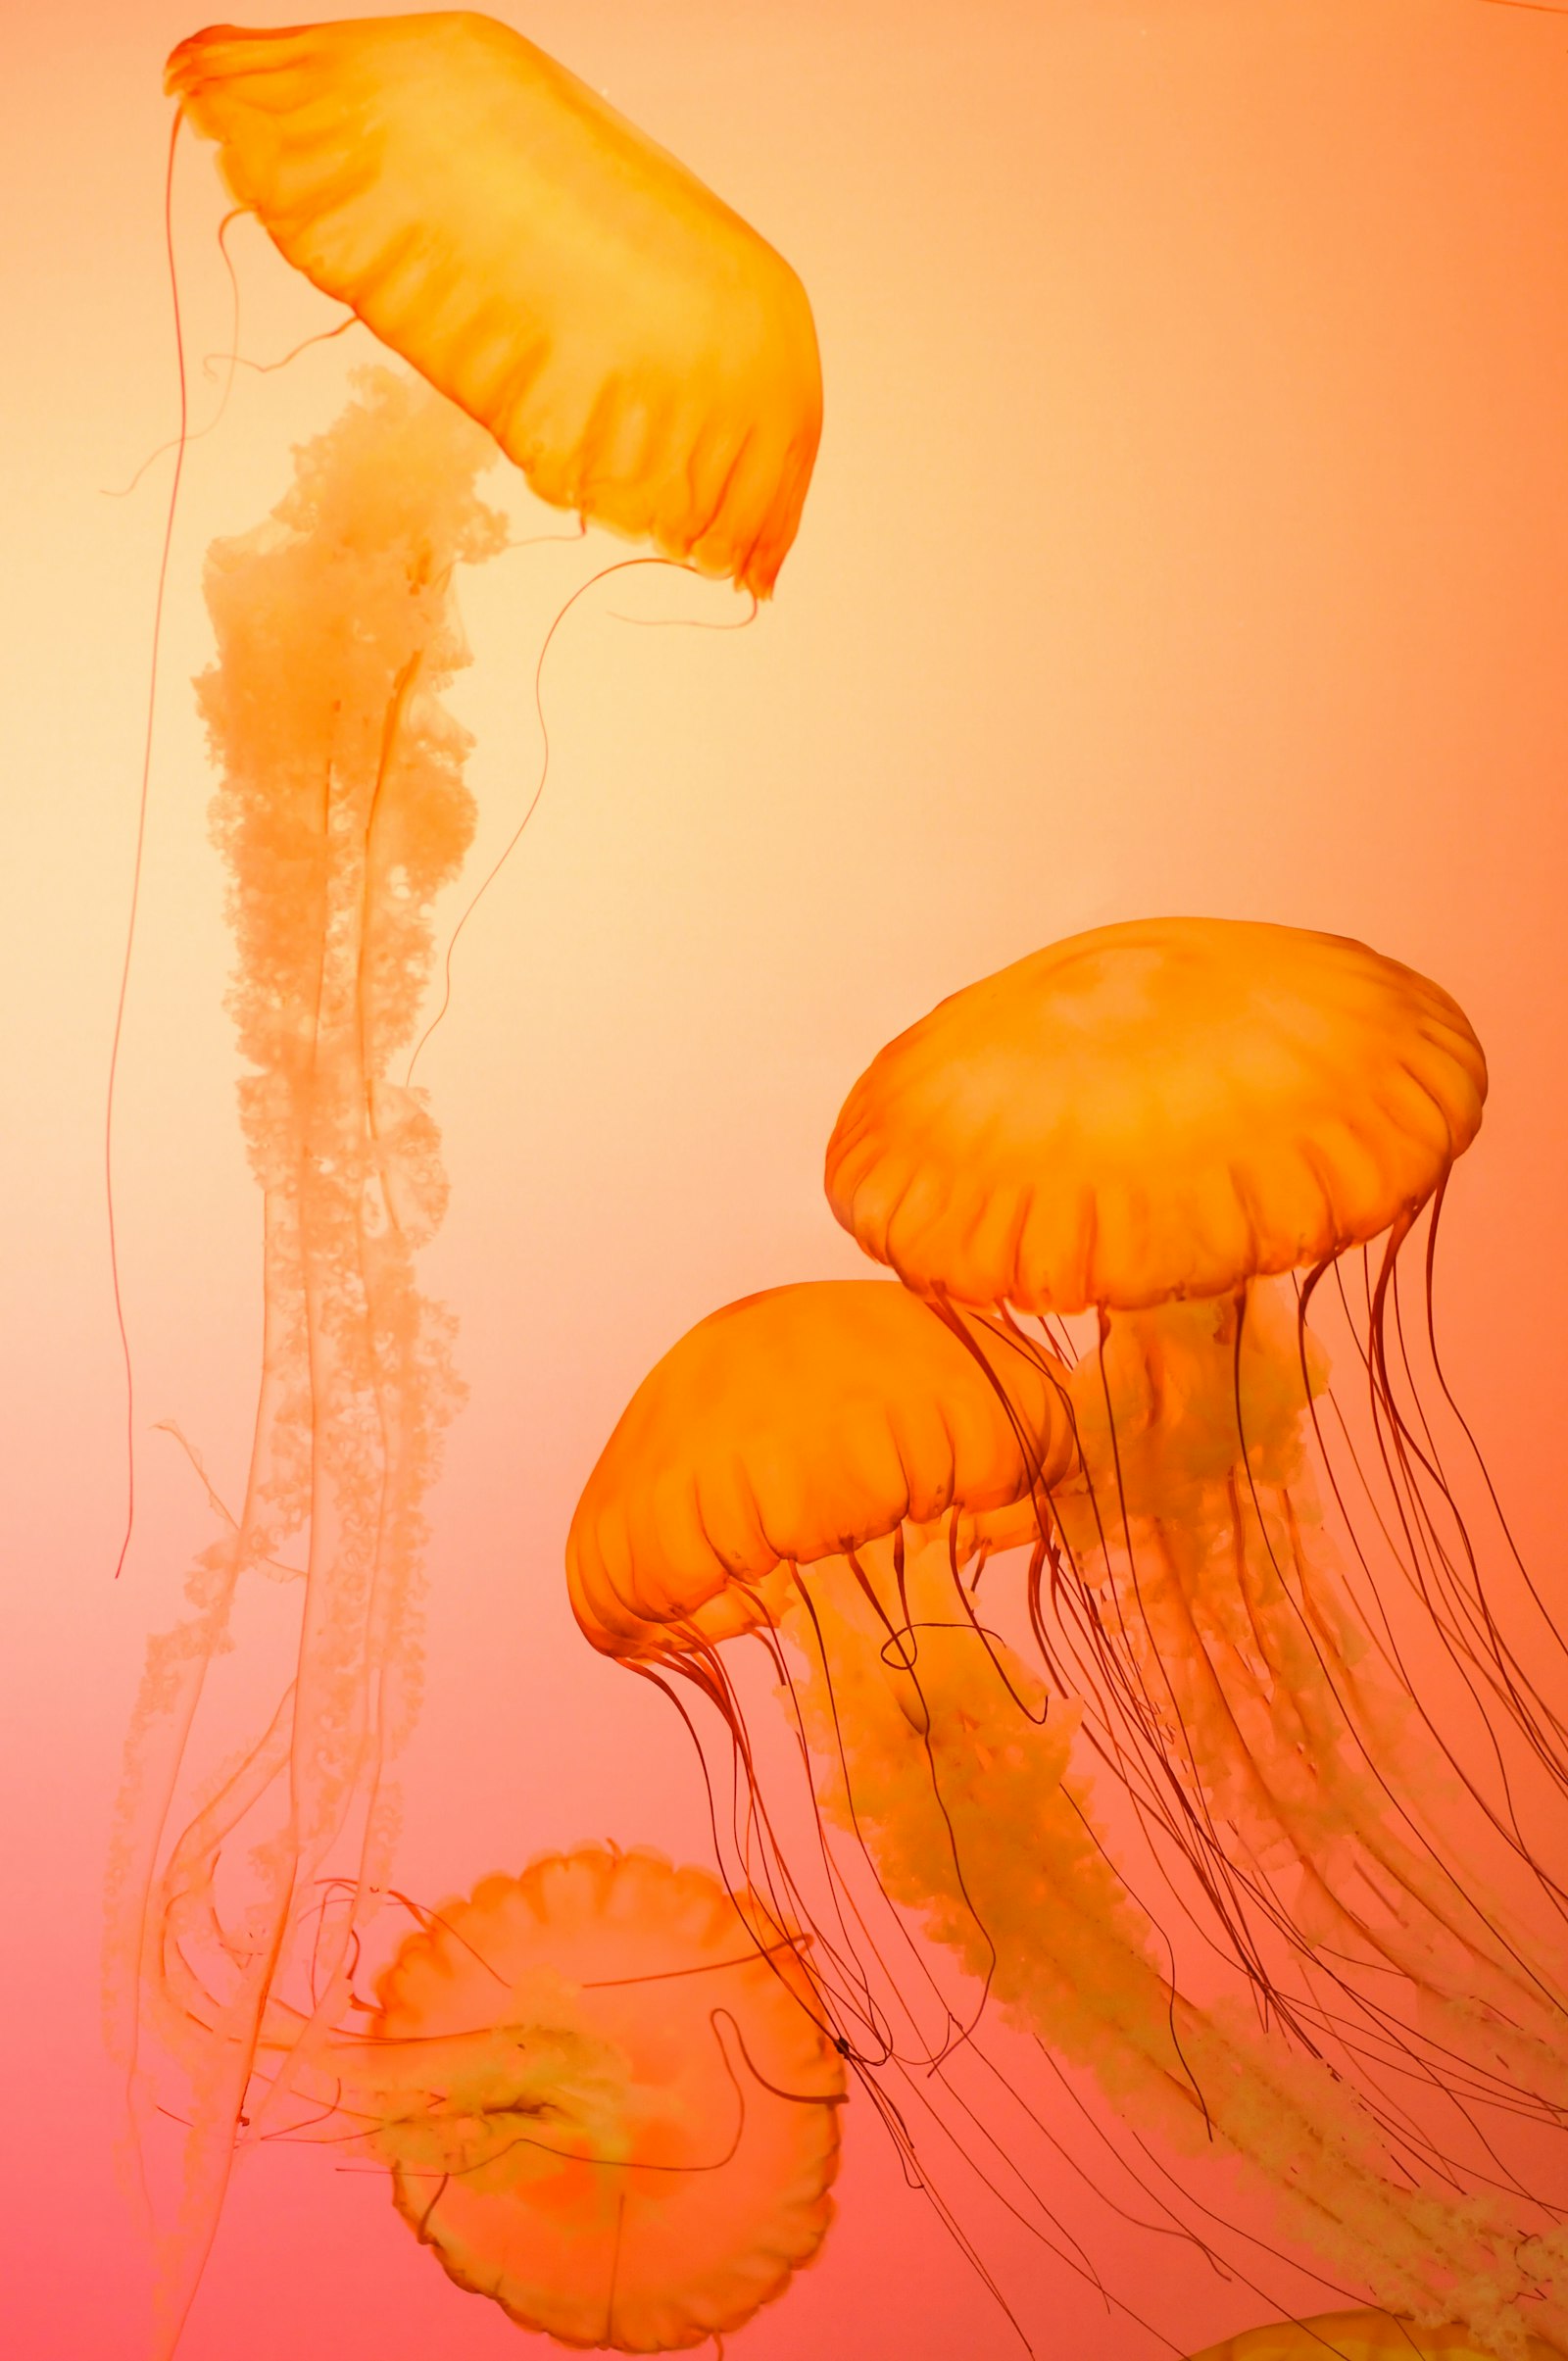 Nikon D300 + Nikon AF Nikkor 50mm F1.4D sample photo. Four orange jellyfish photography